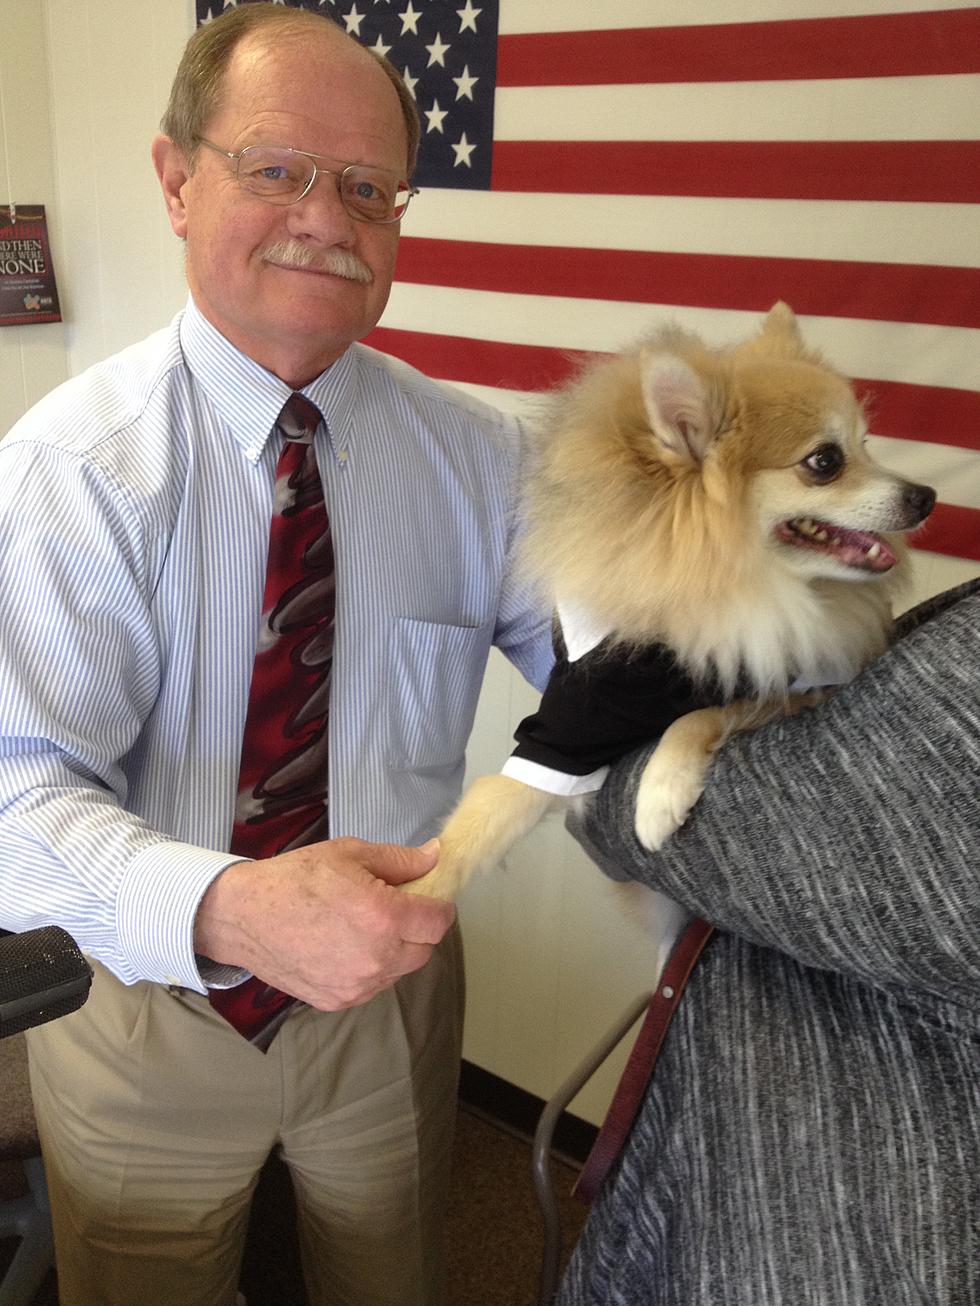 Montana The Dog Mayor Of Cheyenne Visits With Cheyenne Mayor Kasen